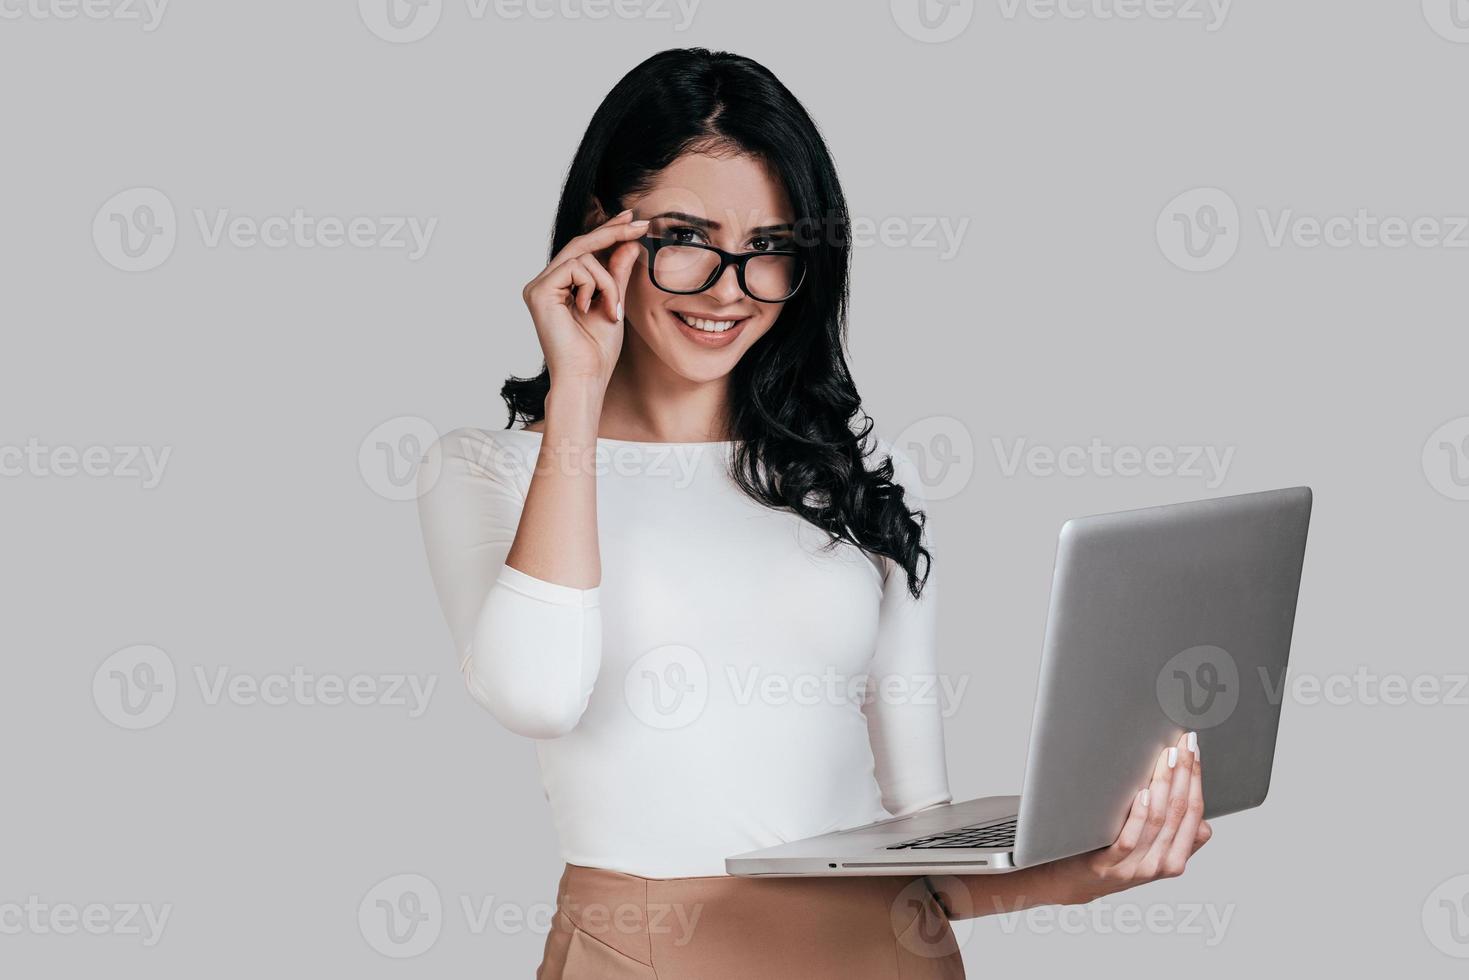 mujer joven hermosa en ropa casual inteligente sosteniendo una computadora portátil y ajustando sus anteojos mientras está de pie contra un fondo gris foto